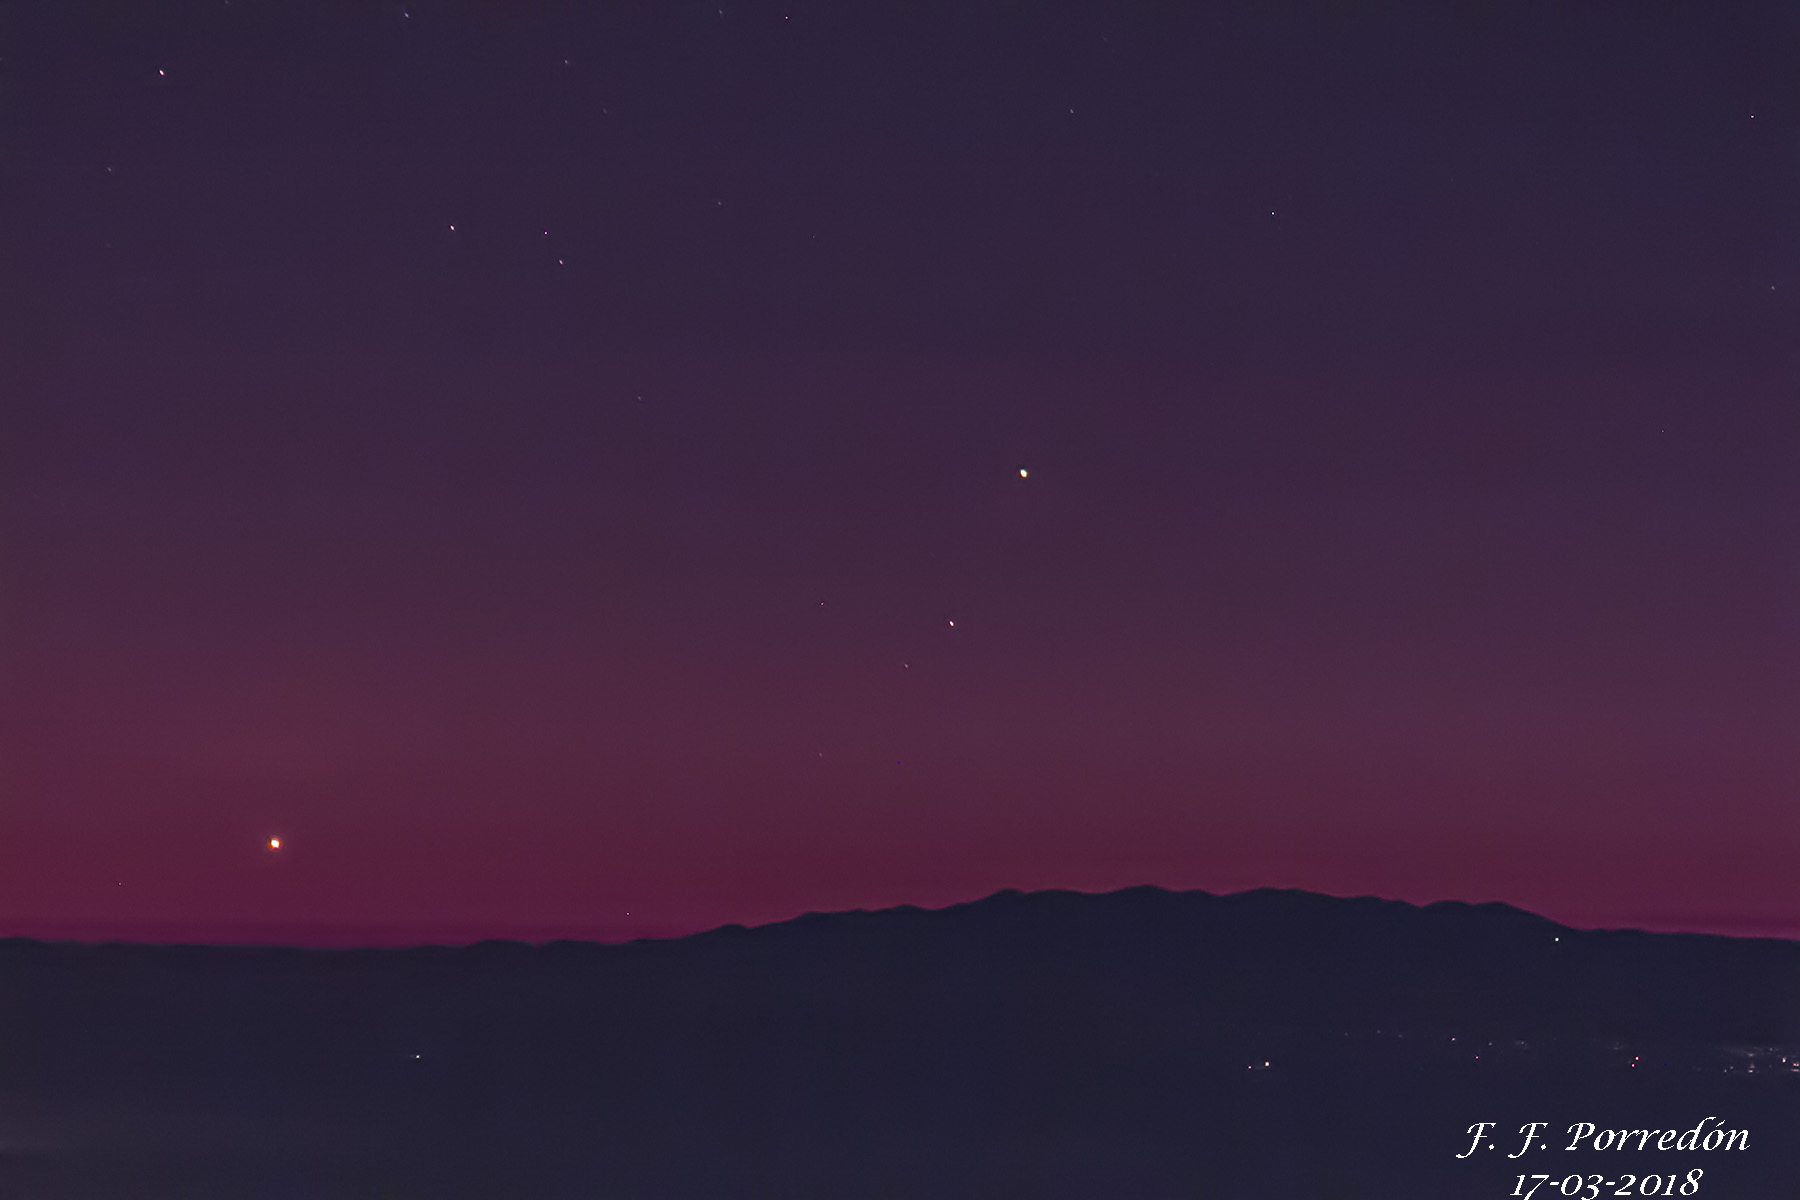 GAC166 FIGURA 7A Venus y Mercurio sobre La Palma 17 03 2018